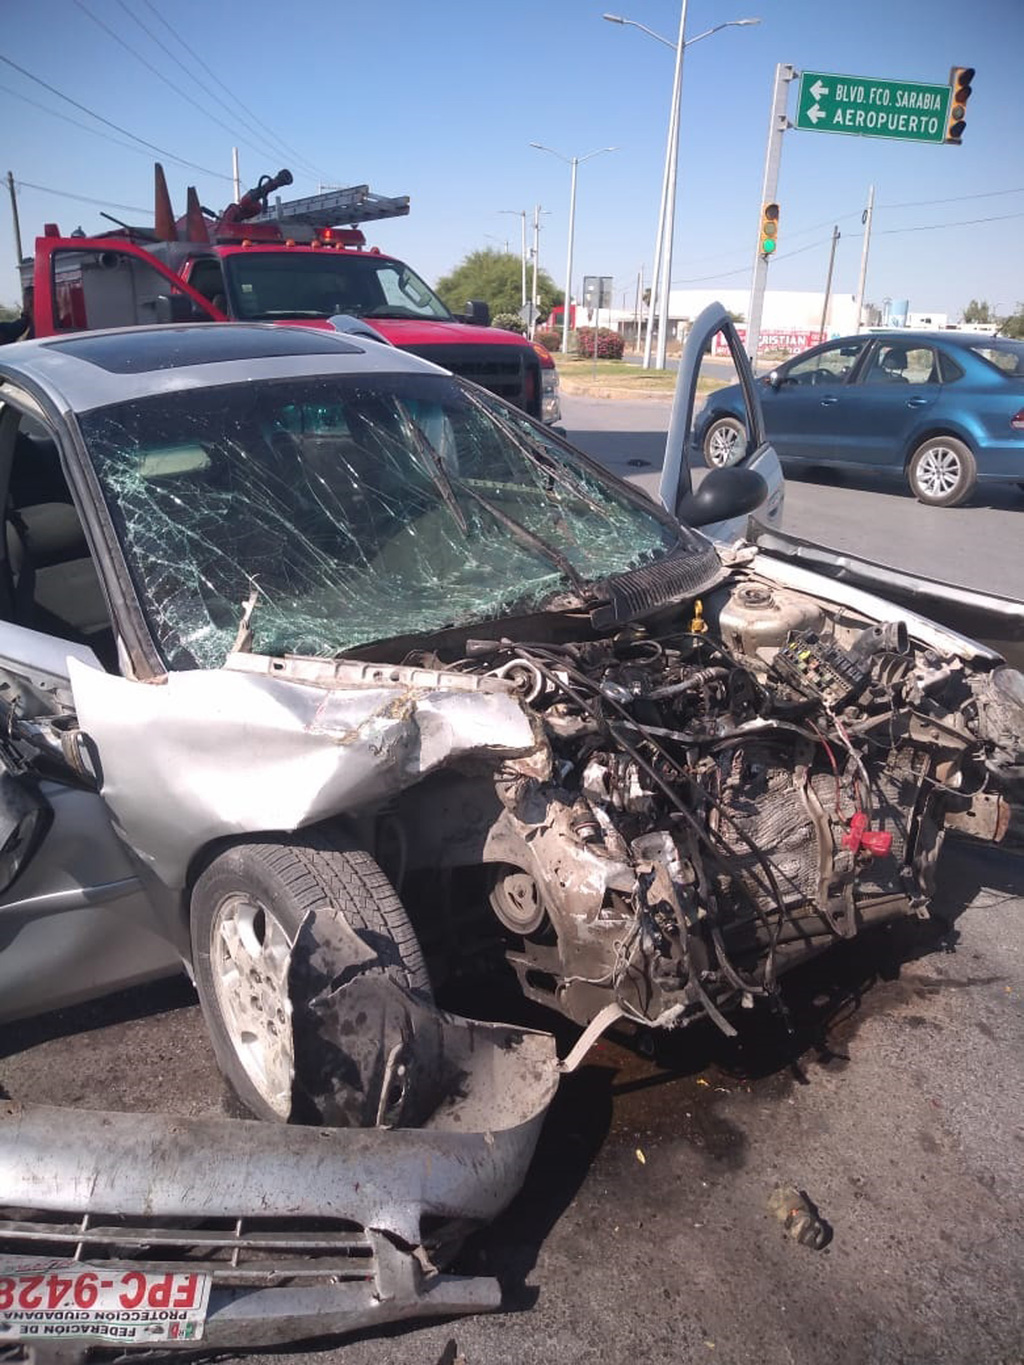 El accidente vial ocurrió la tarde del pasado domingo en el cruce del bulevar Rodríguez Triana y la calzada Francisco Sarabia de la colonia Sección 38 de la ciudad de Torreón. (EL SIGLO DE TORREÓN)